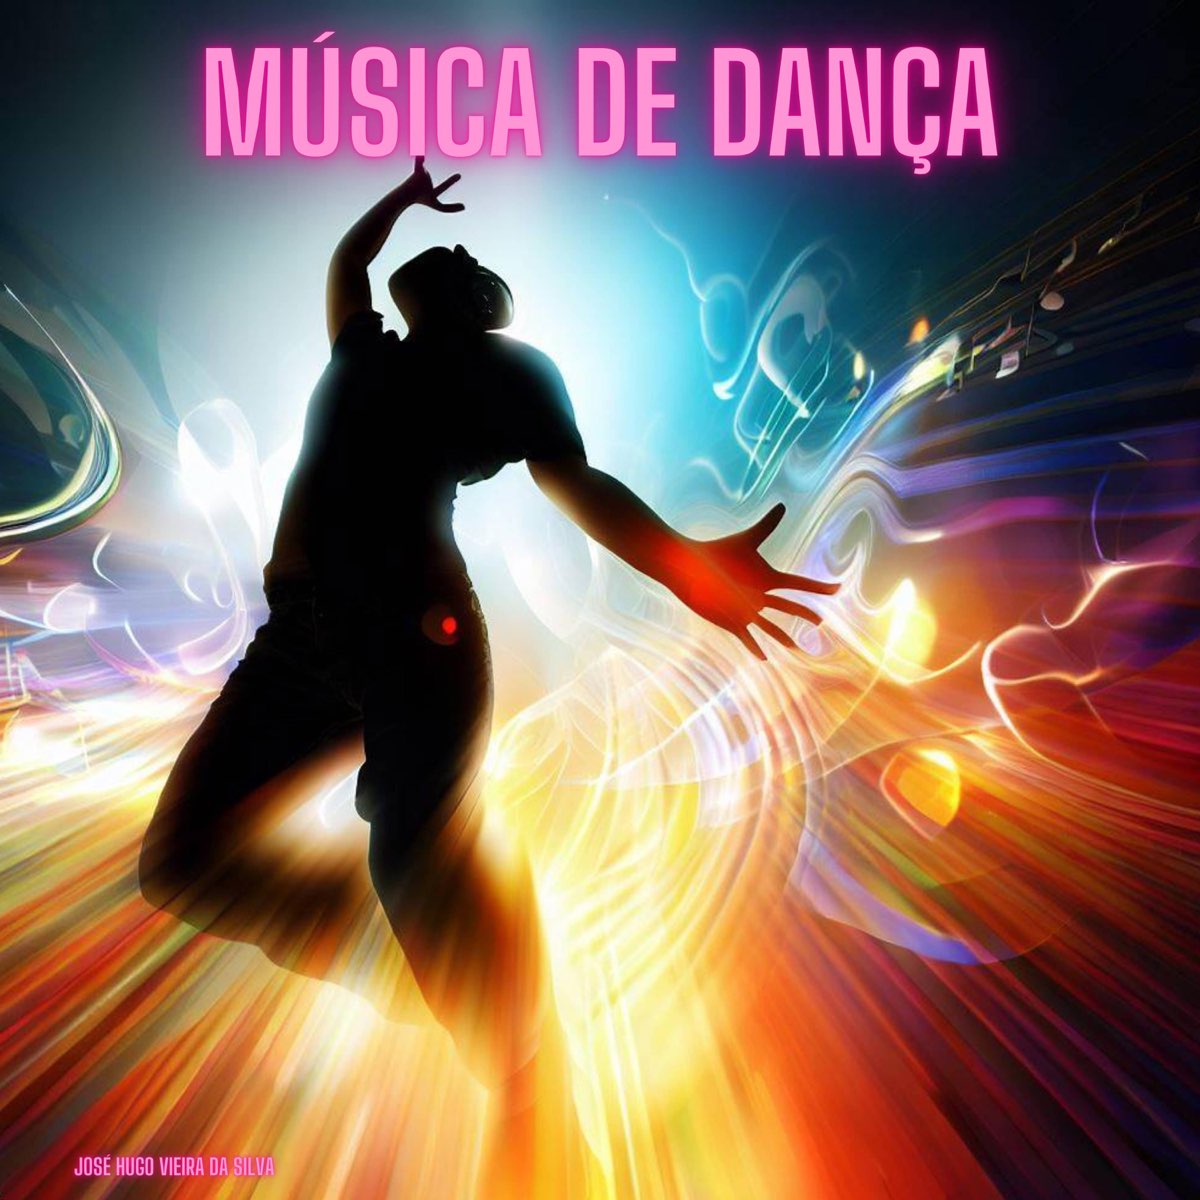 Música de Dança - Single - Album by José Hugo Vieira da Silva